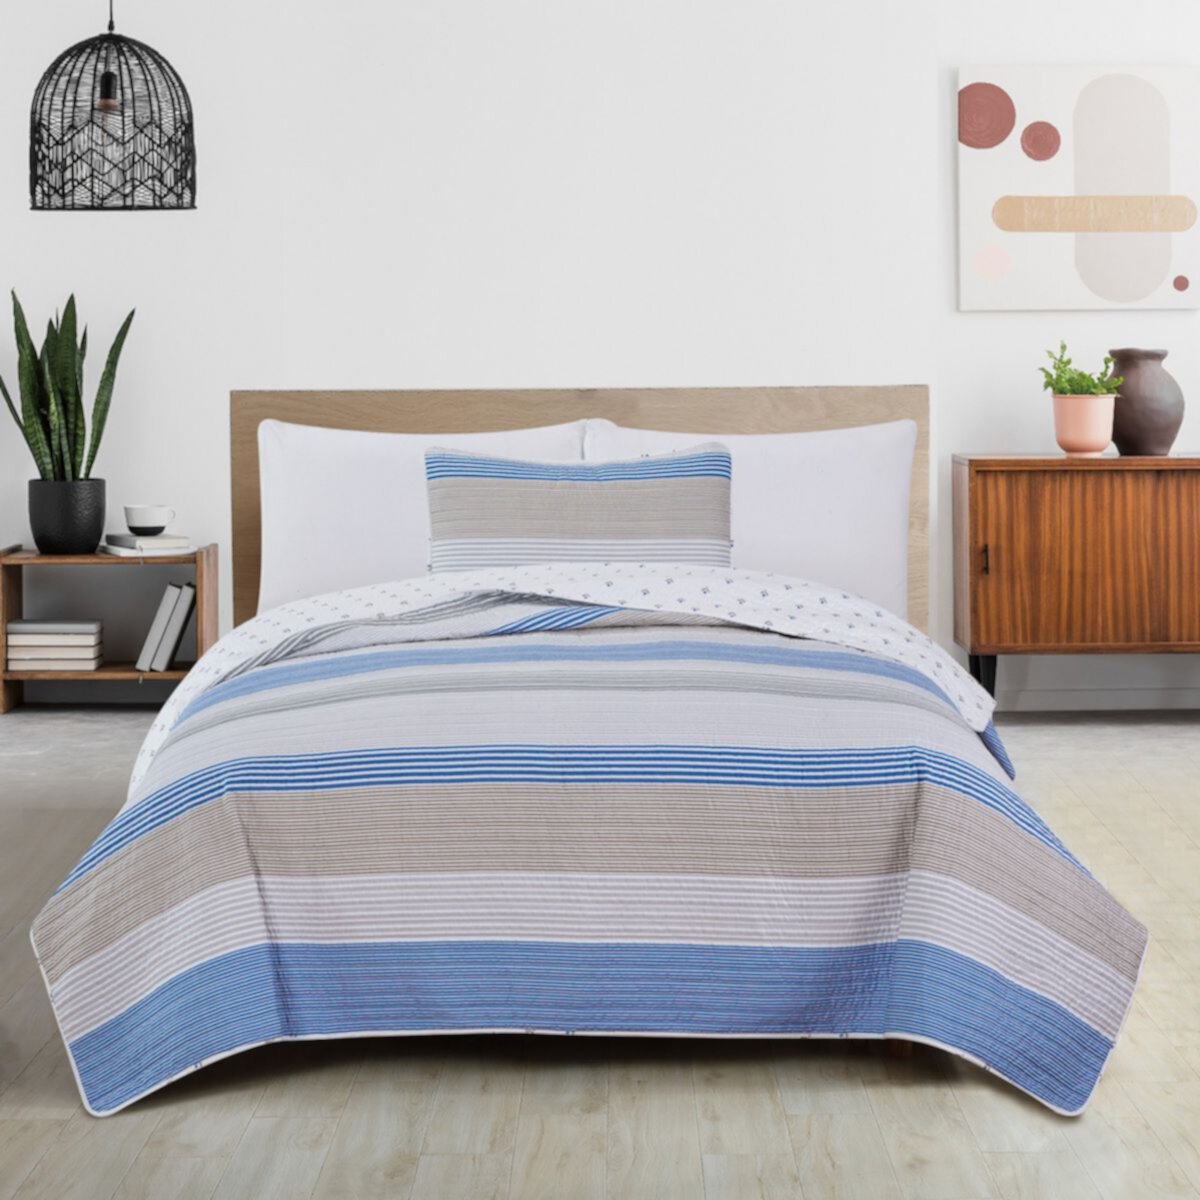 Комплект одеял и накидок в широкую полоску Madelinen® Bryce Madelinen